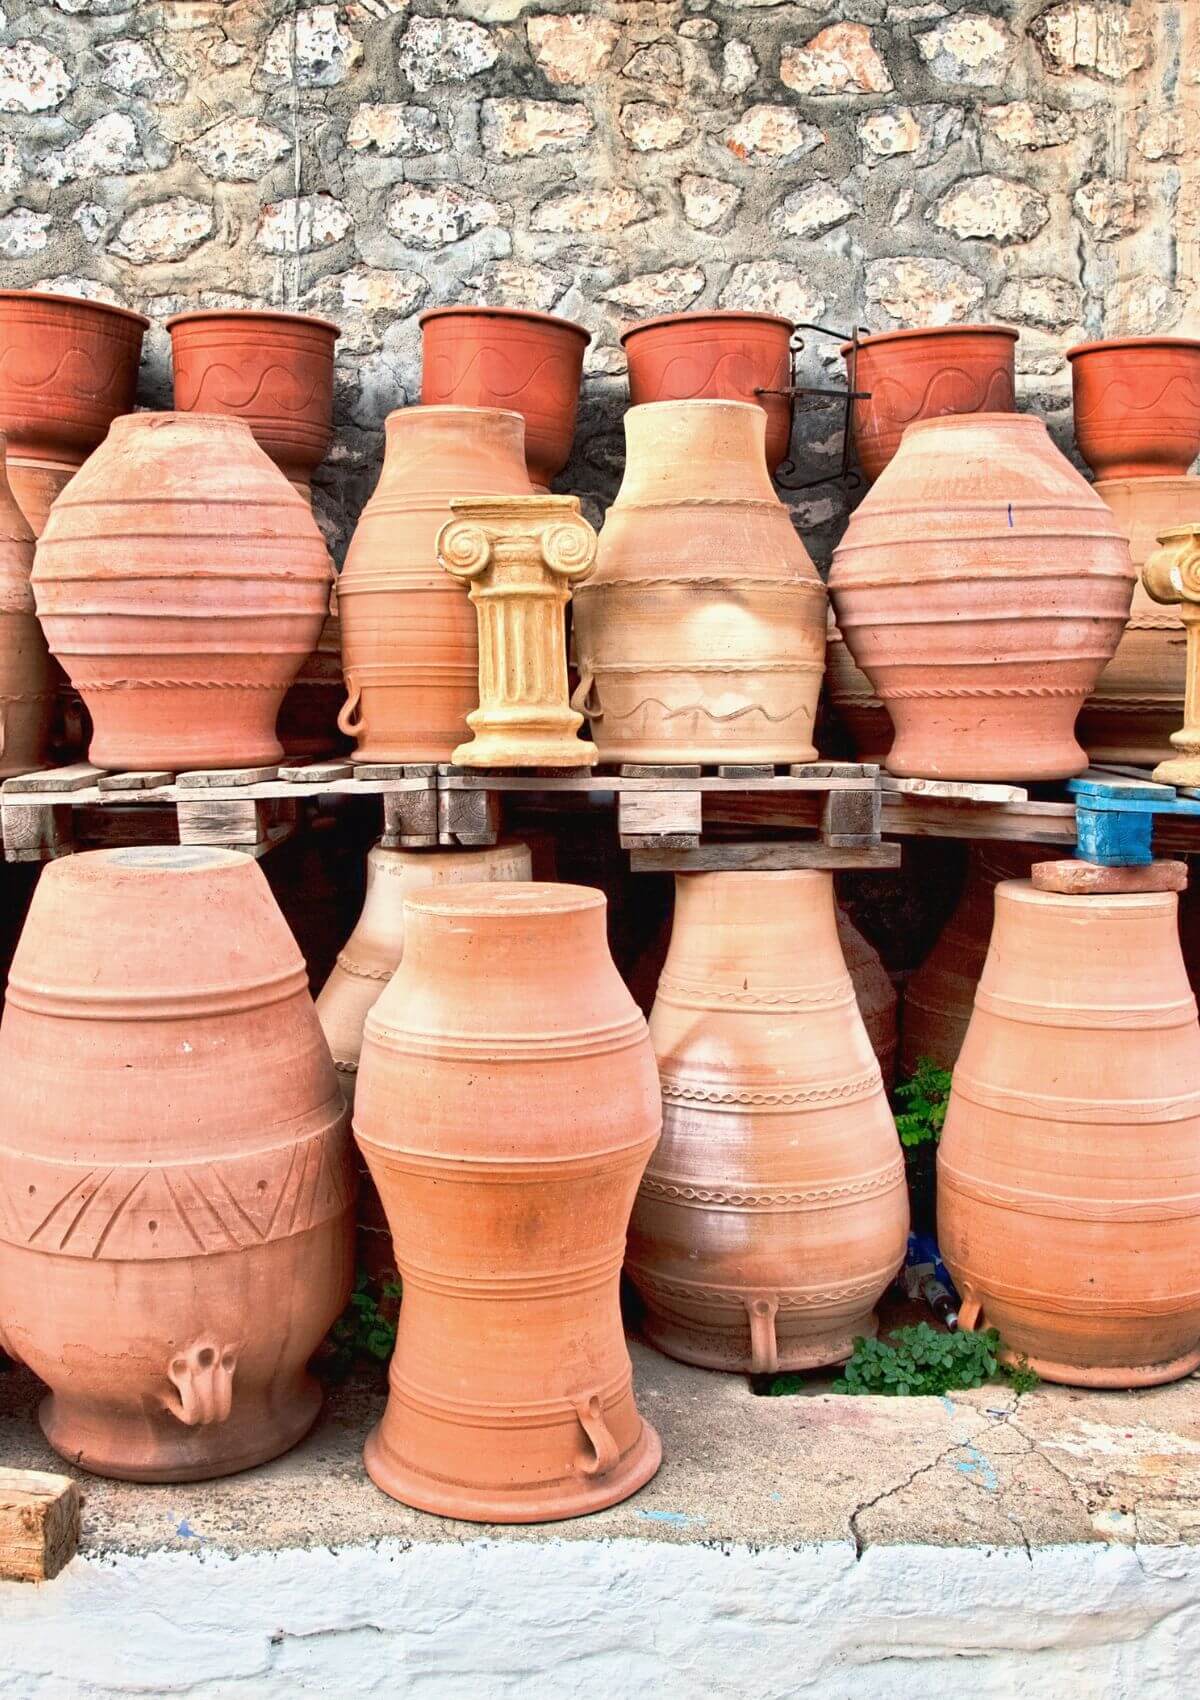 Greek pottery souvenirs